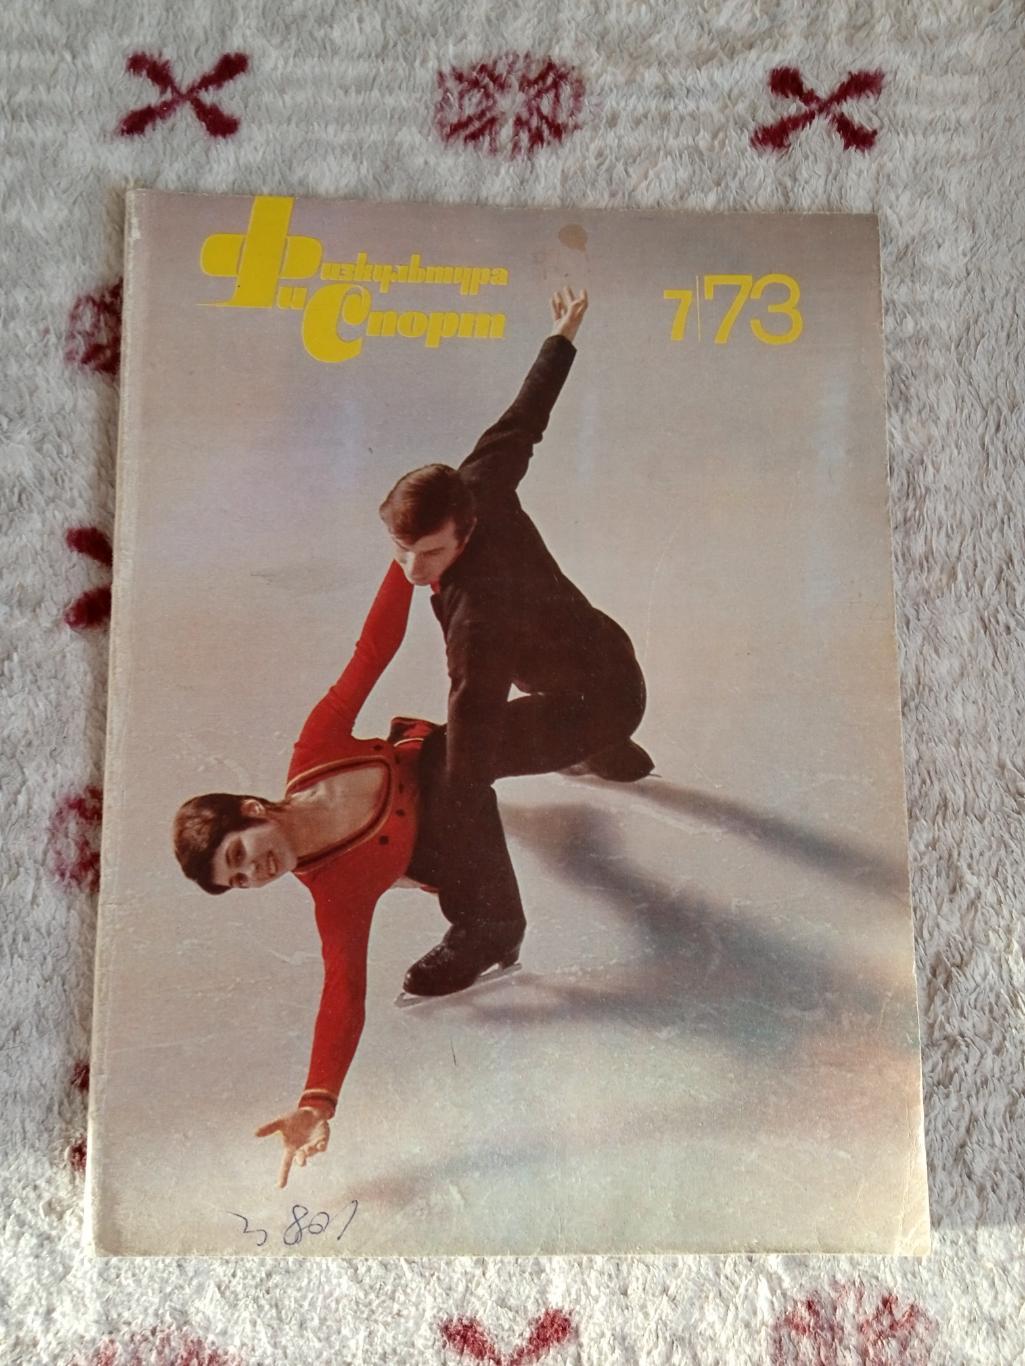 Журнал.Физкультура и спорт № 7 1973 г. (ФиС).